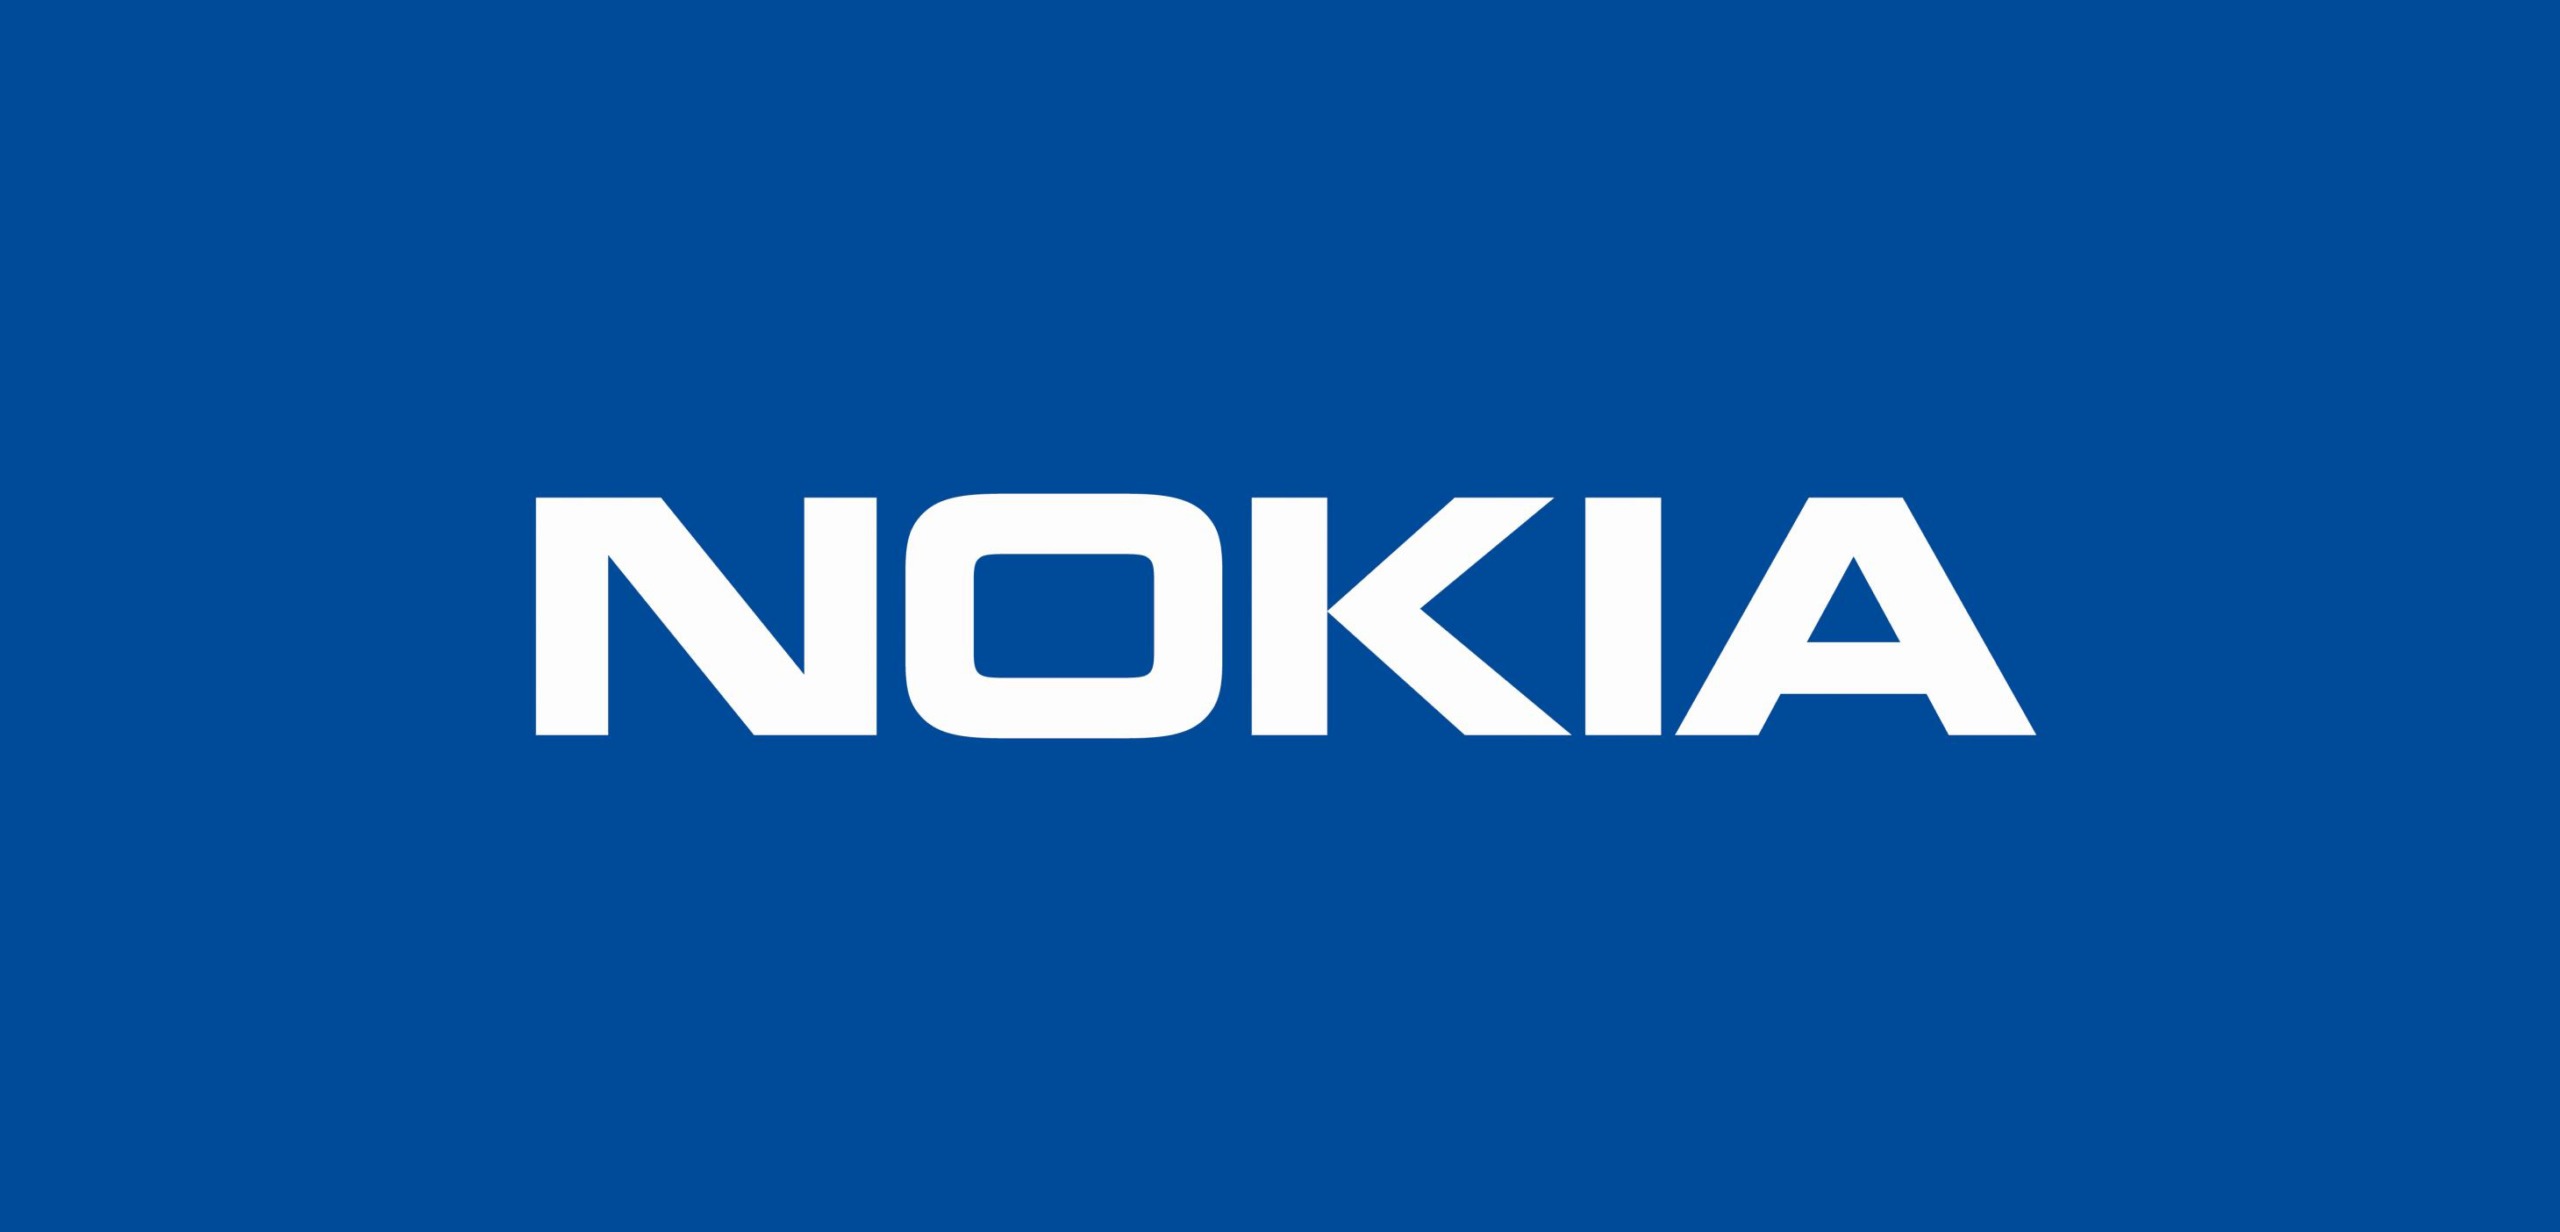 Nokia podpisała porozumienie na budowę sieci 5G w Kanadzie